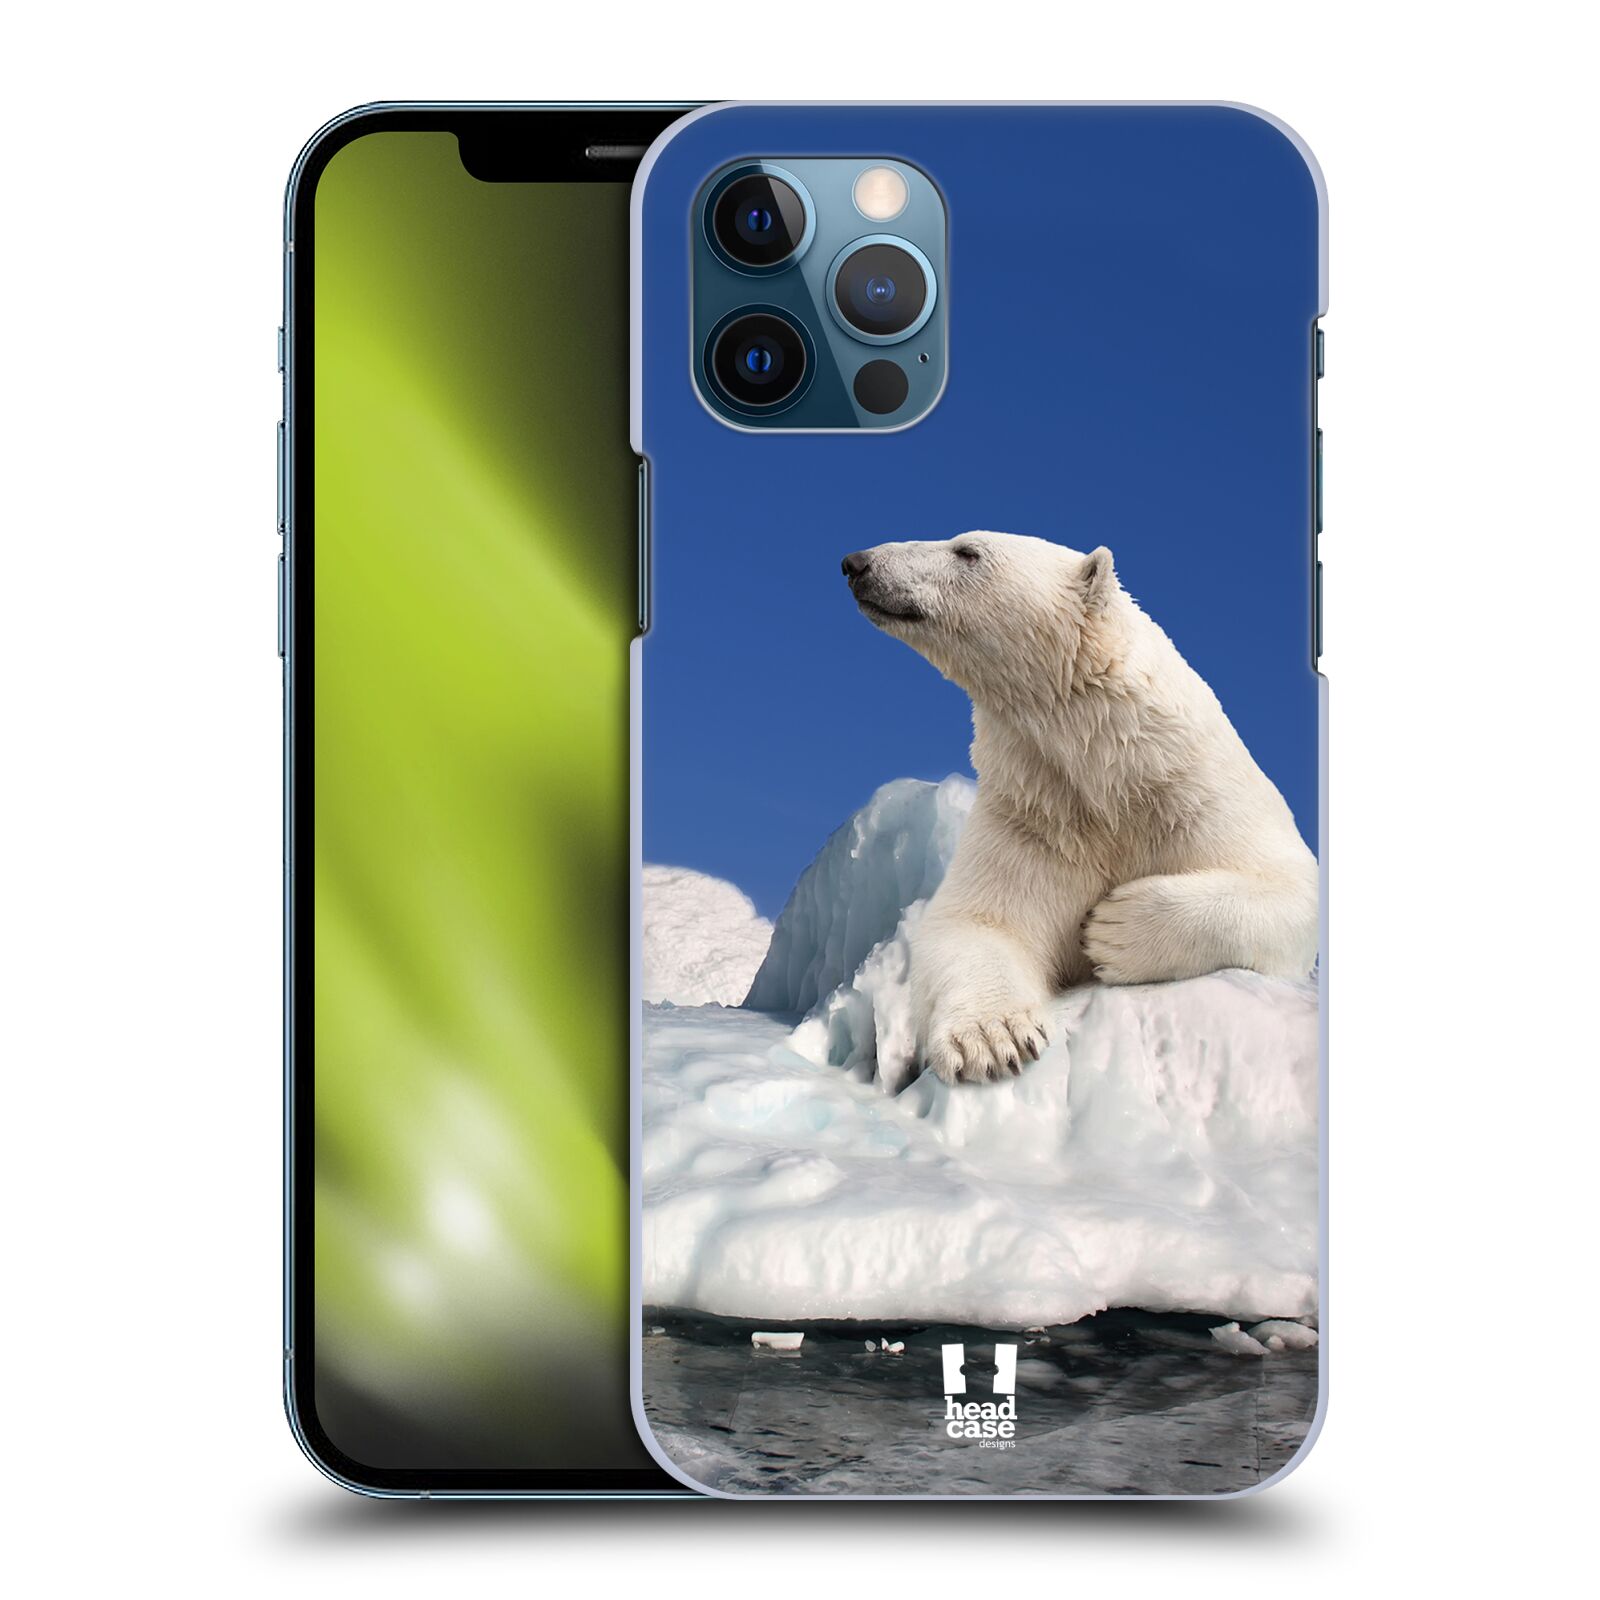 HEAD CASE plastový obal na mobil Apple Iphone 12 / Iphone 12 PRO vzor Divočina, Divoký život a zvířata foto LEDNÍ MEDVĚD NA LEDOVCI A NEBE MODRÁ